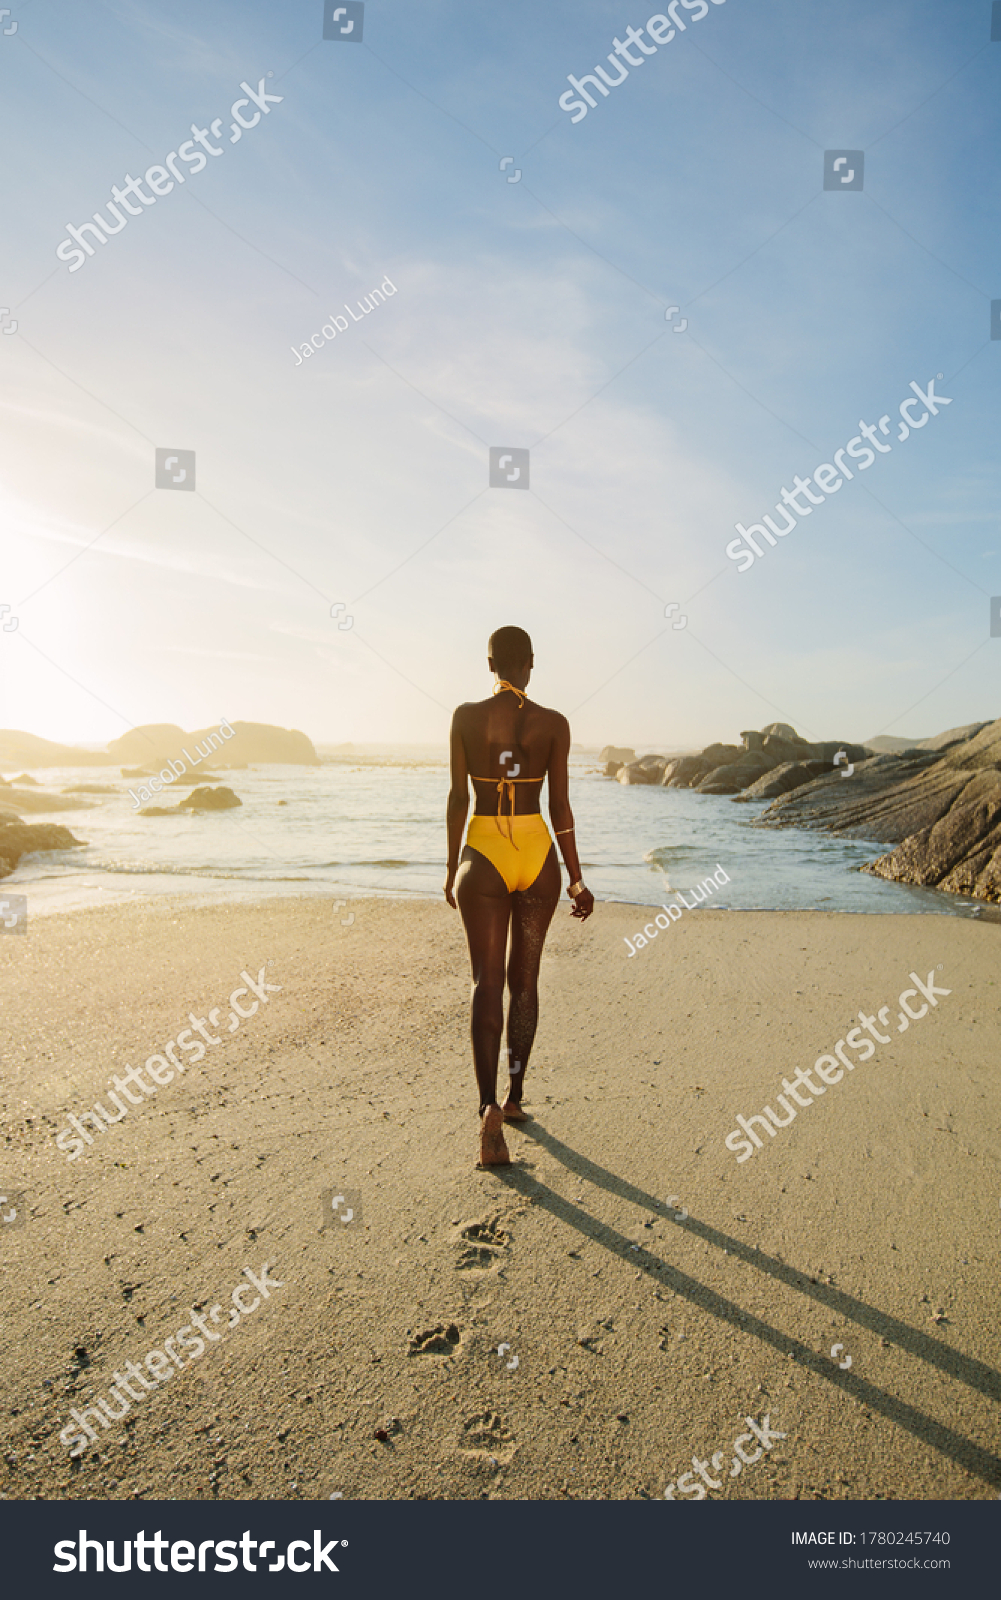 47 560 рез по запросу Woman In Yellow Bikini — изображения стоковые фотографии и векторная